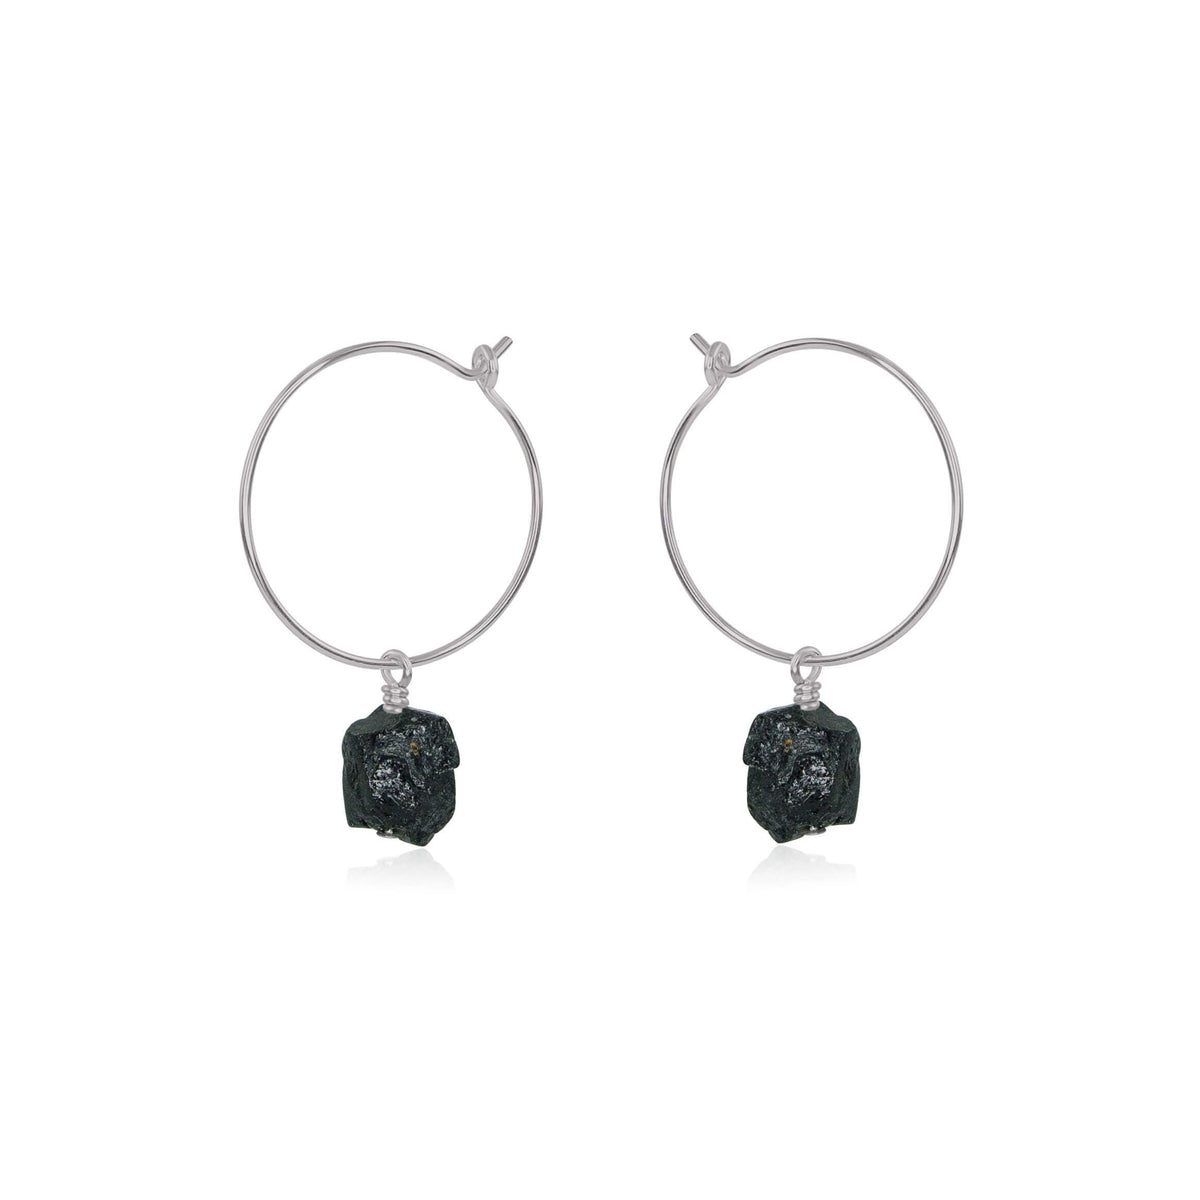 Raw Nugget Hoop Earrings - Black Tourmaline - Stainless Steel - Luna Tide Handmade Jewellery